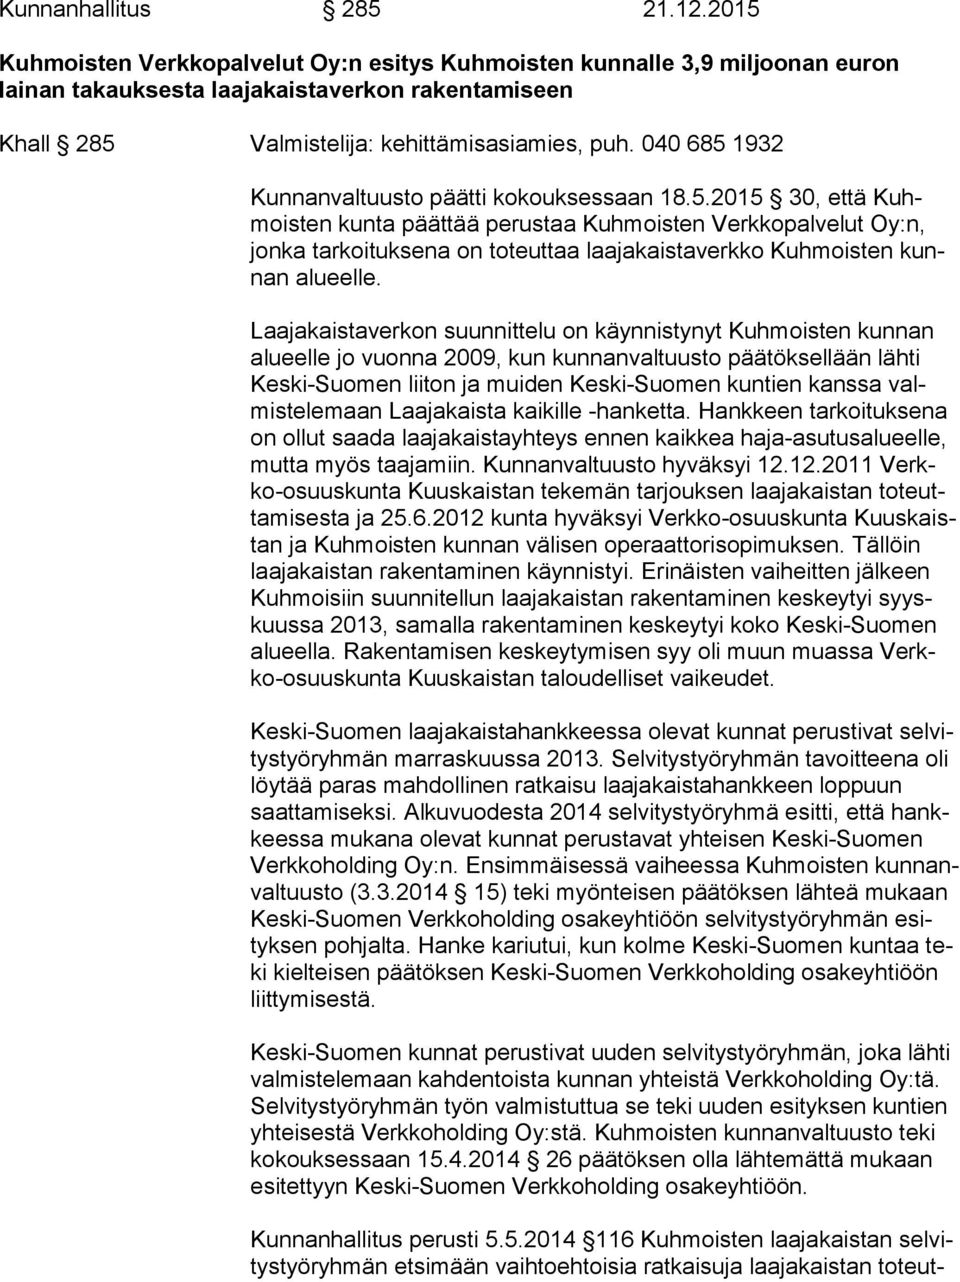 040 685 1932 Kunnanvaltuusto päätti kokouksessaan 18.5.2015 30, että Kuhmois ten kunta päättää perustaa Kuhmoisten Verkkopalvelut Oy:n, jon ka tarkoituksena on toteuttaa laajakaistaverkko Kuhmoisten kunnan alueelle.